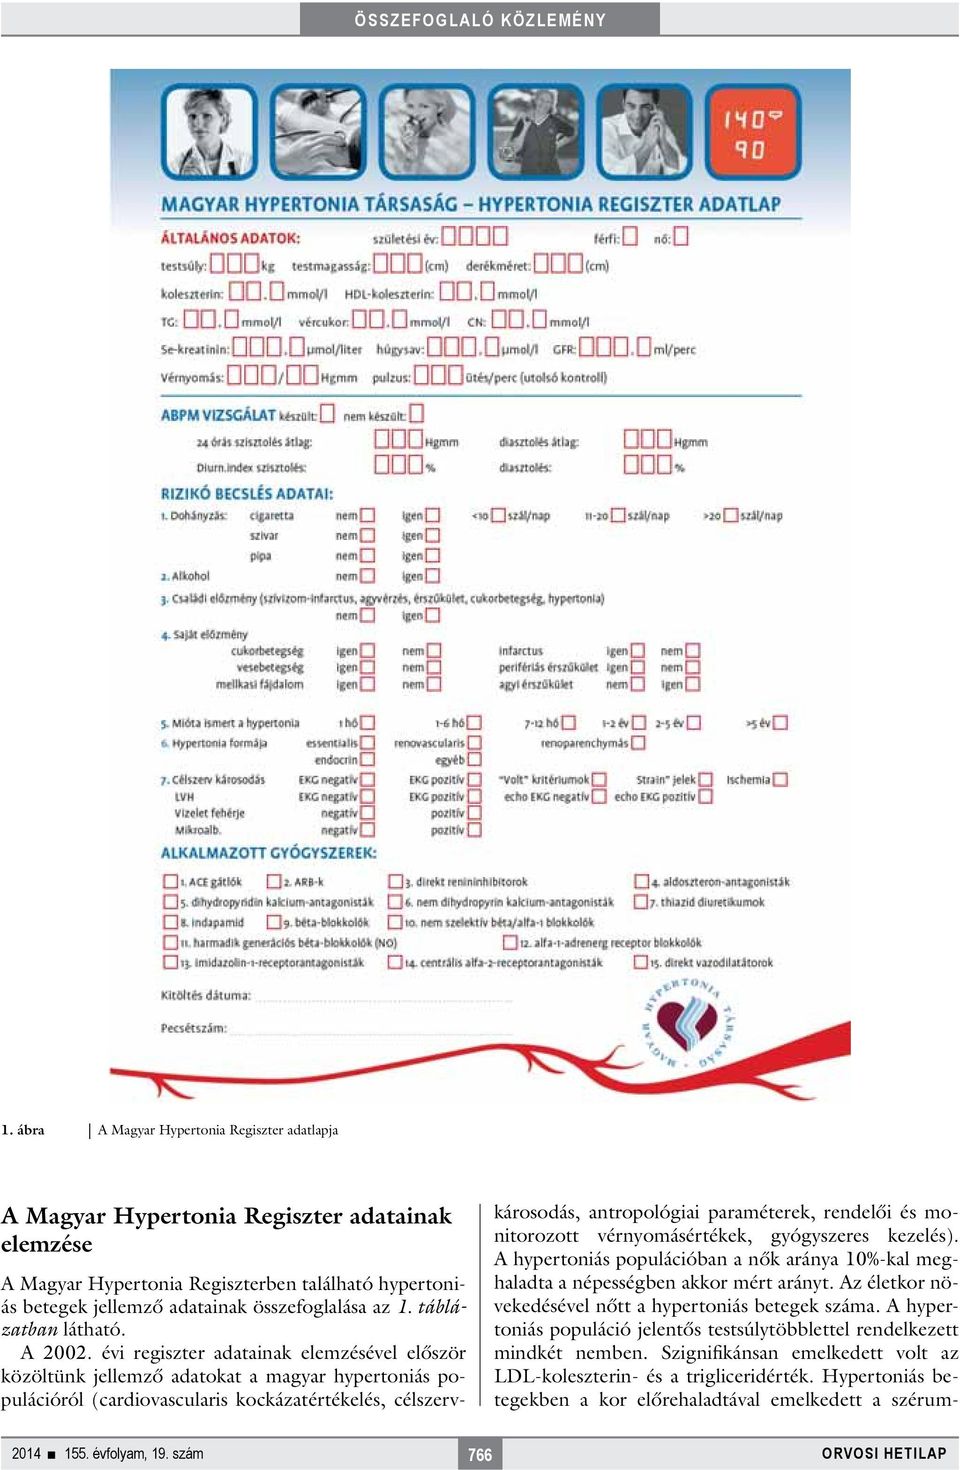 évi regiszter adatainak elemzésével először közöltünk jellemző adatokat a magyar hypertoniás populációról (cardiovascularis kockázatértékelés, célszervkárosodás, antropológiai paraméterek, rendelői